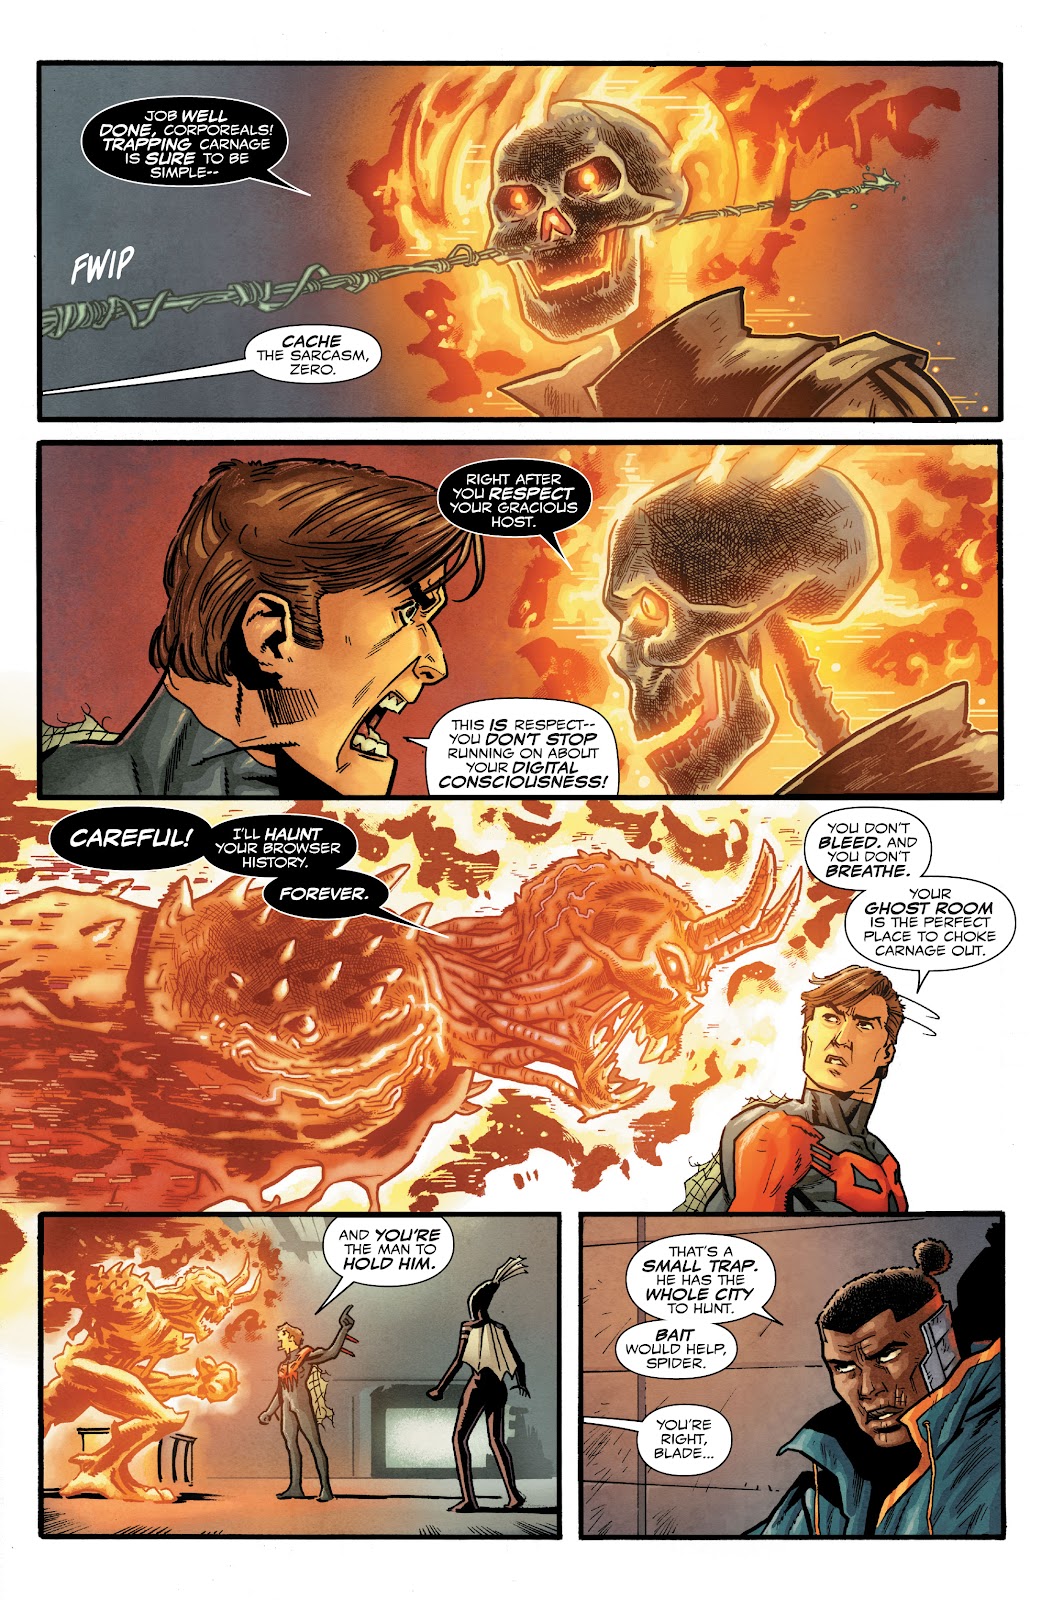 Spider-Man 2099: Dark Genesis issue 2 - Page 13